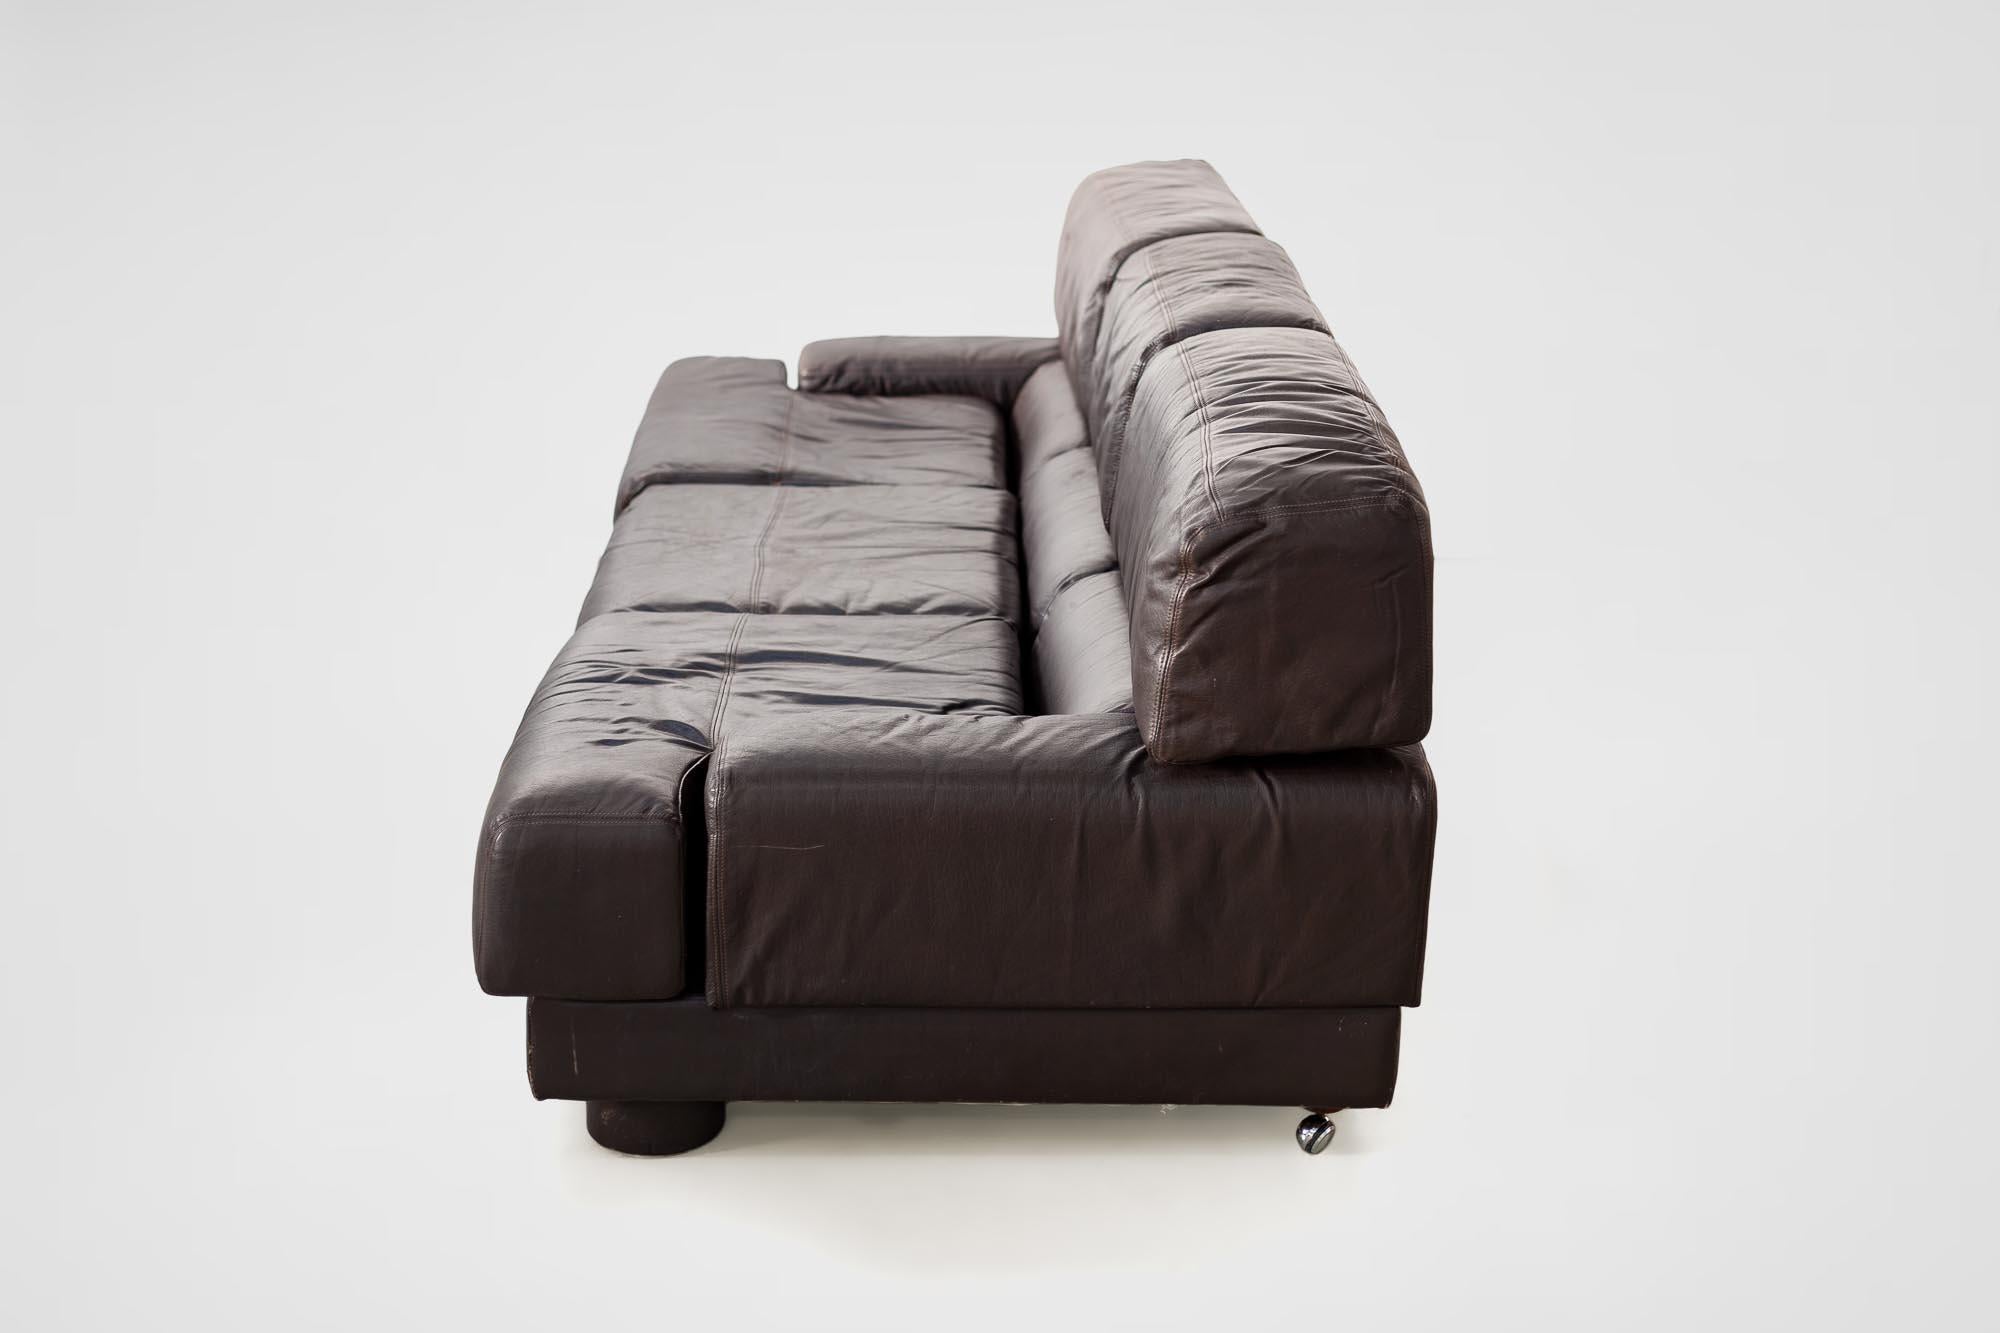 Rare Percival Lafer Sofa in Dark Brown Leather 1